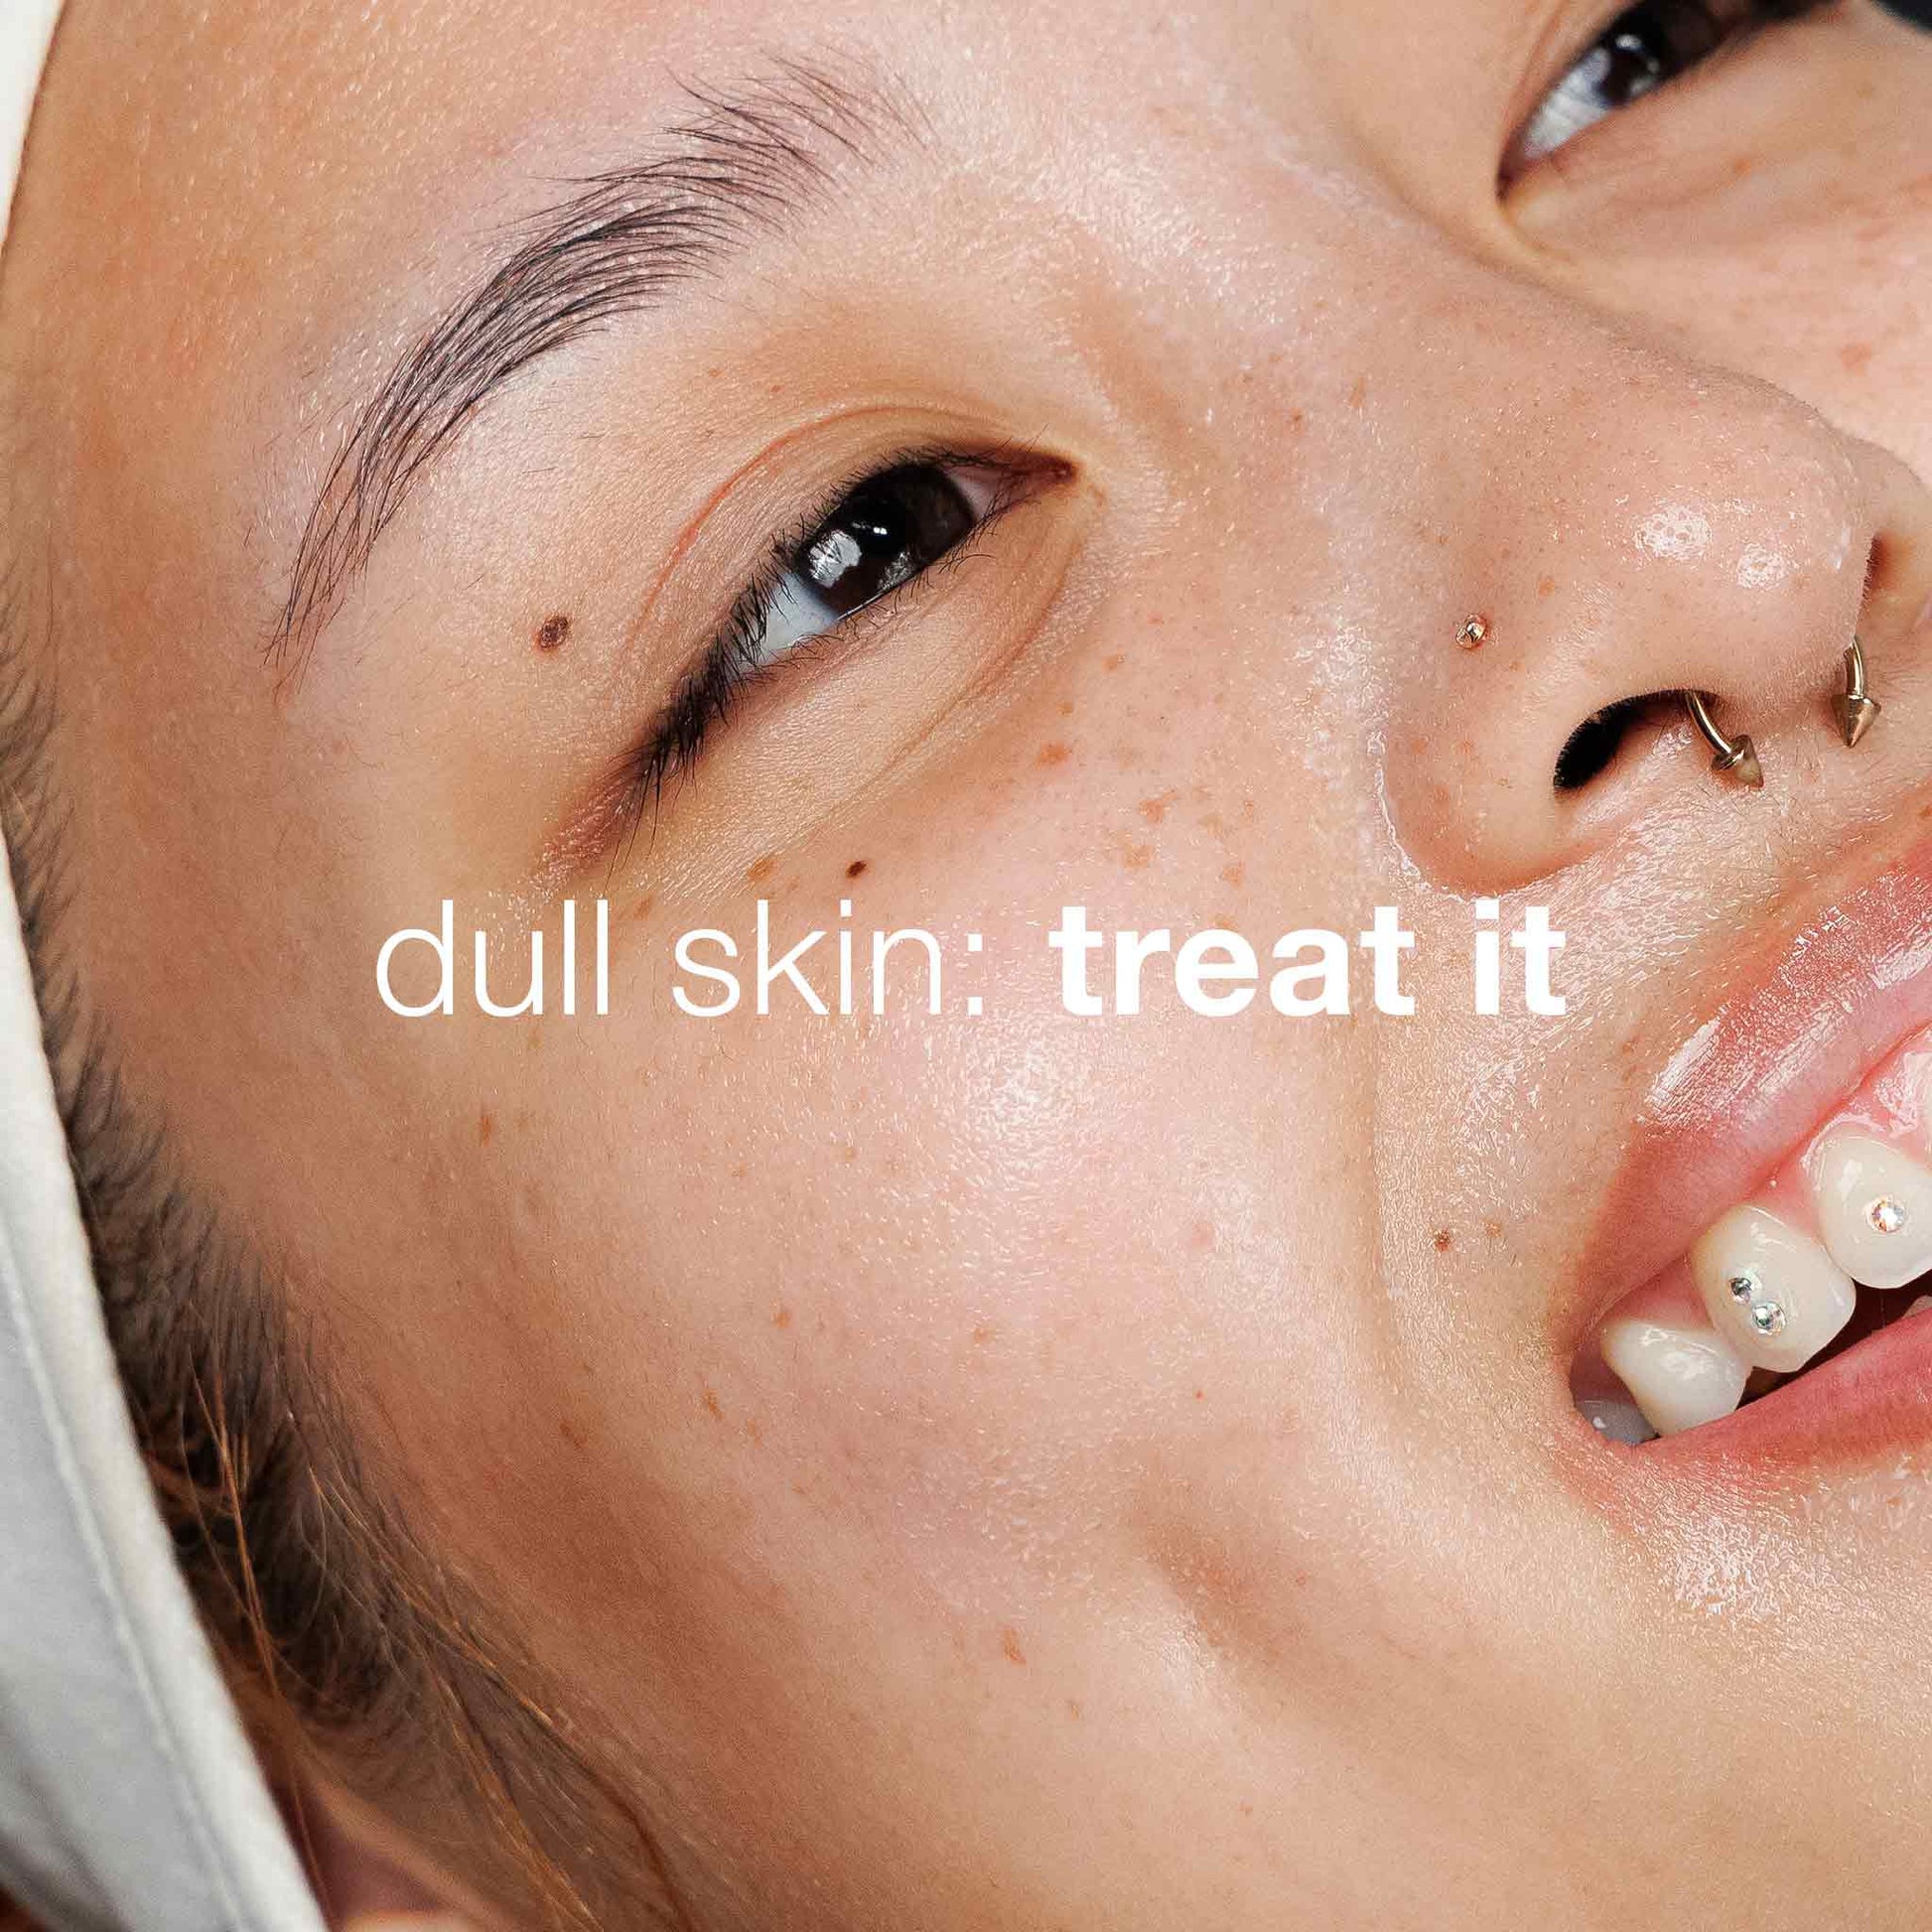 dull skin: treat it